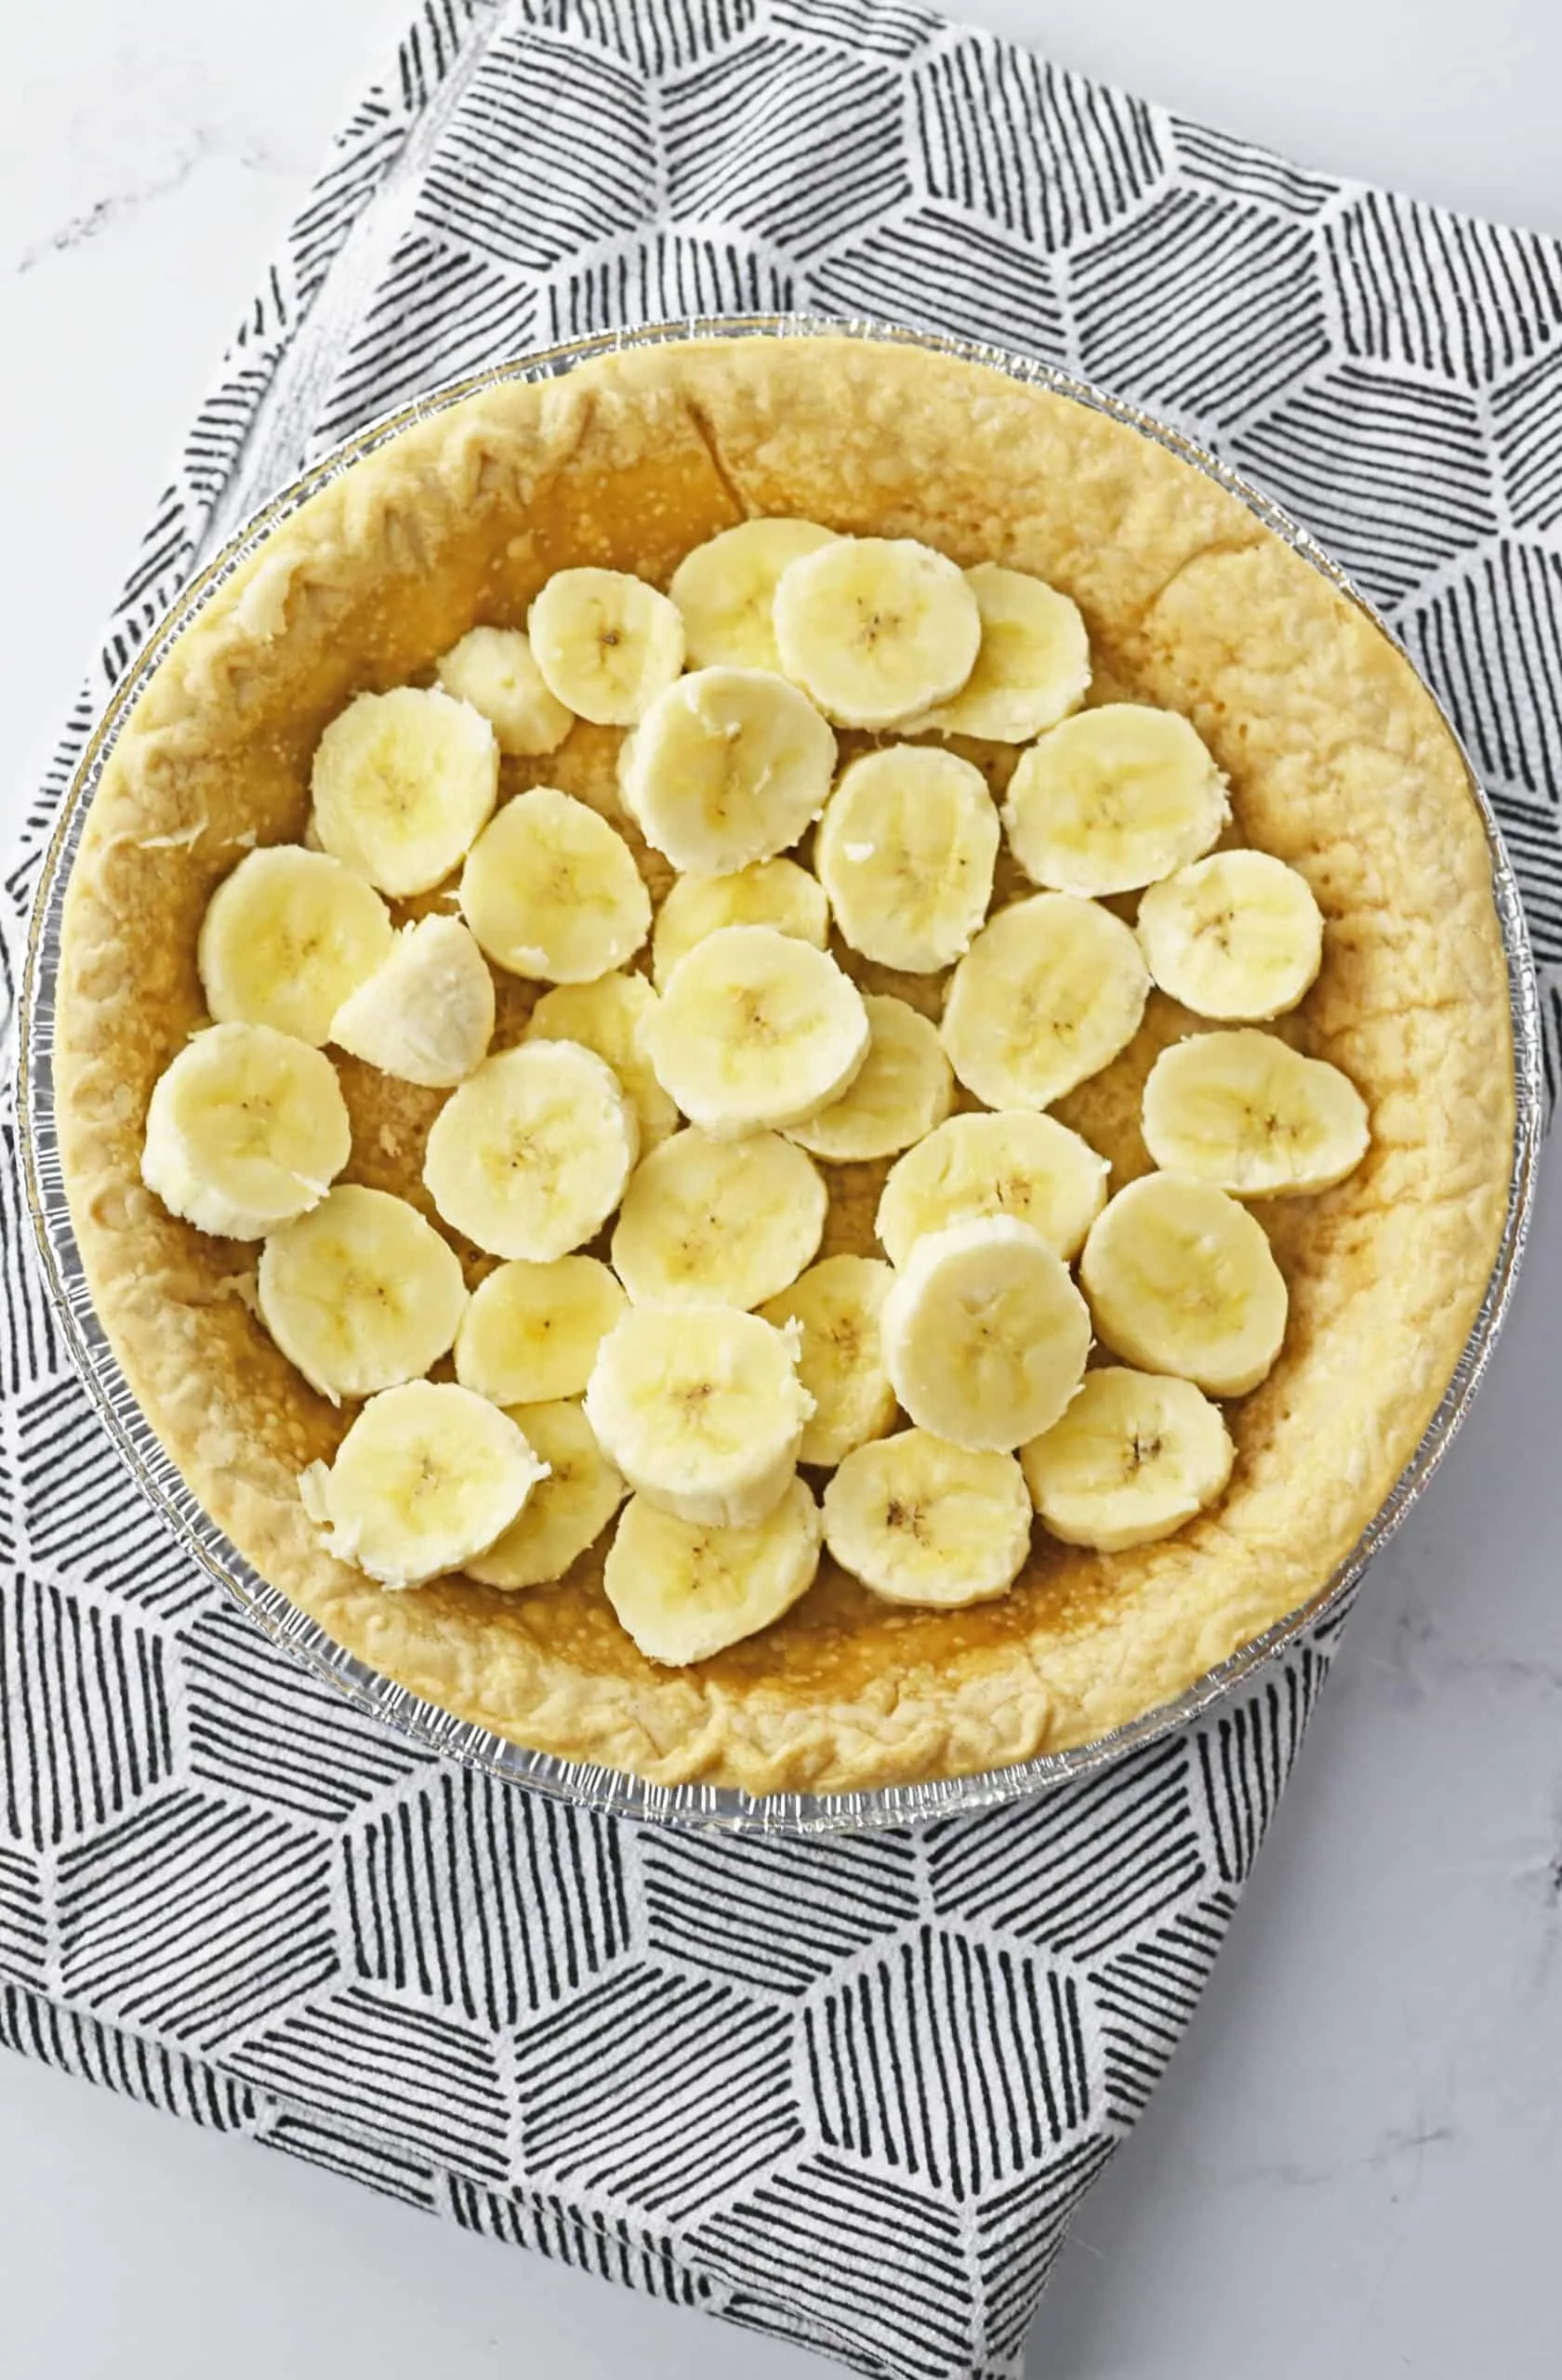 Banana Cream Pie layers, add bananas to crust